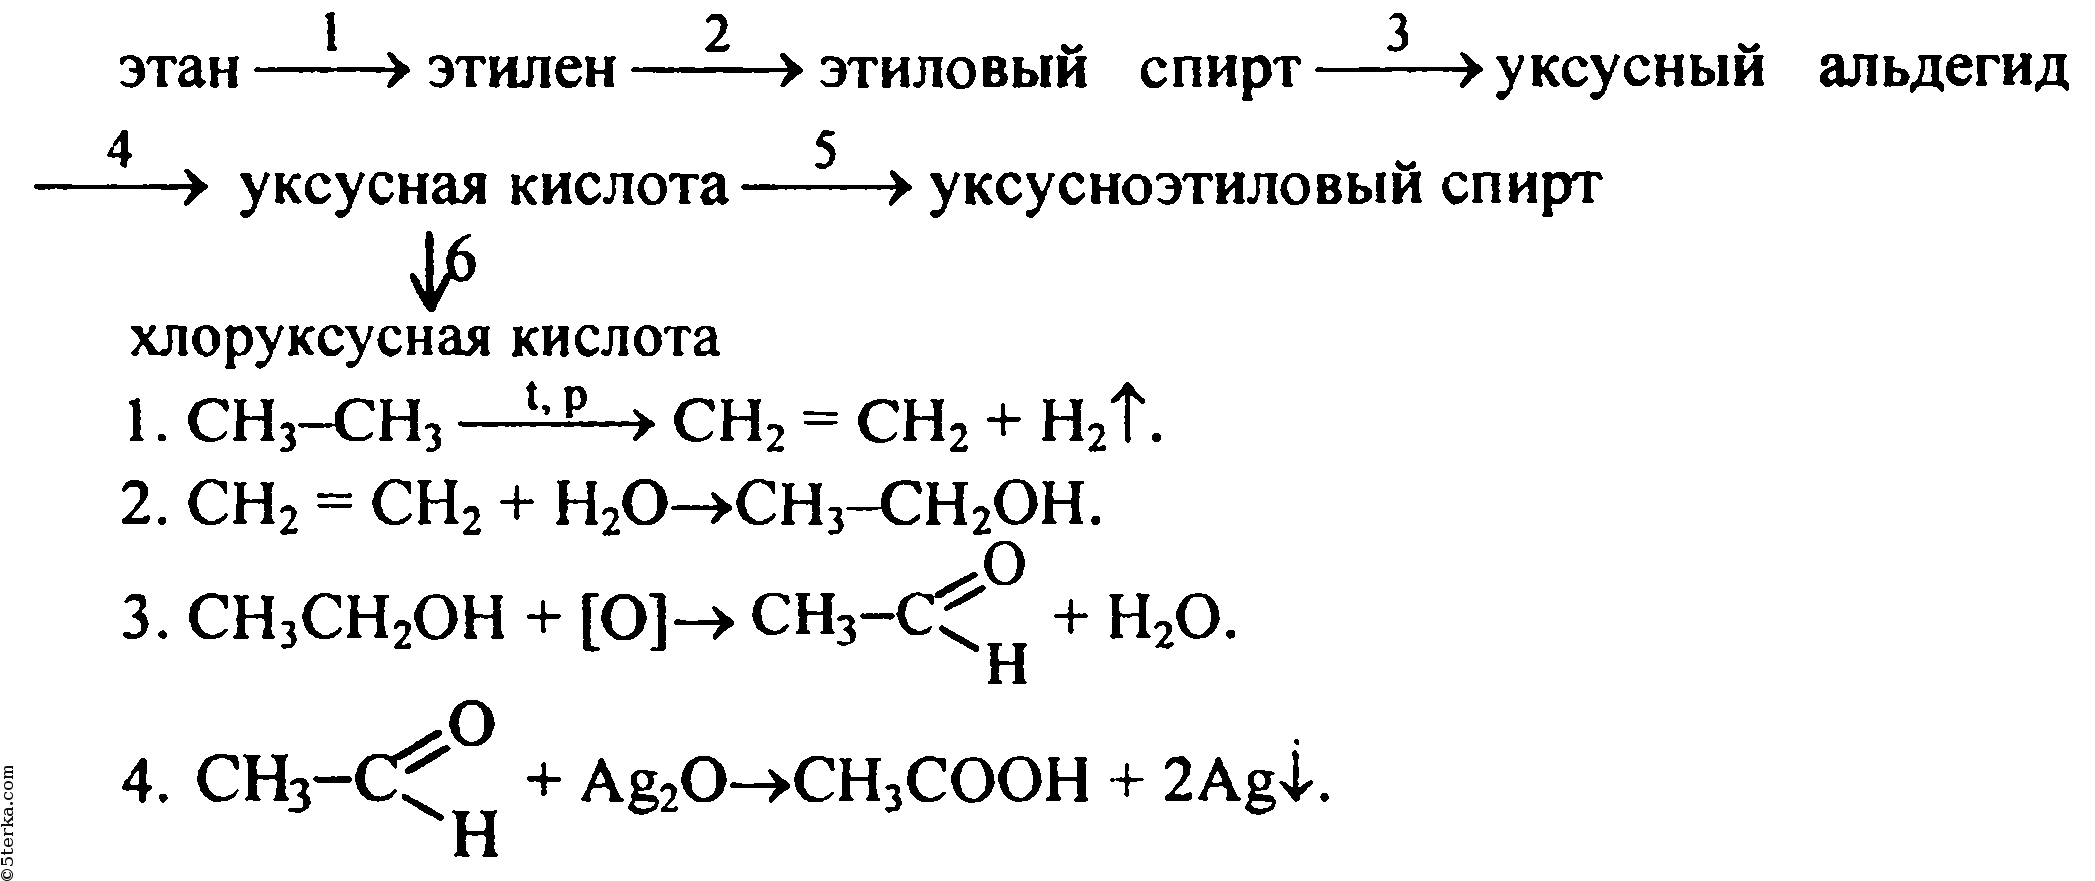 Этан хлорэтан этен хлорэтан этен. Схема получения альдегидов из метана. Схема реакции уксусной кислоты.